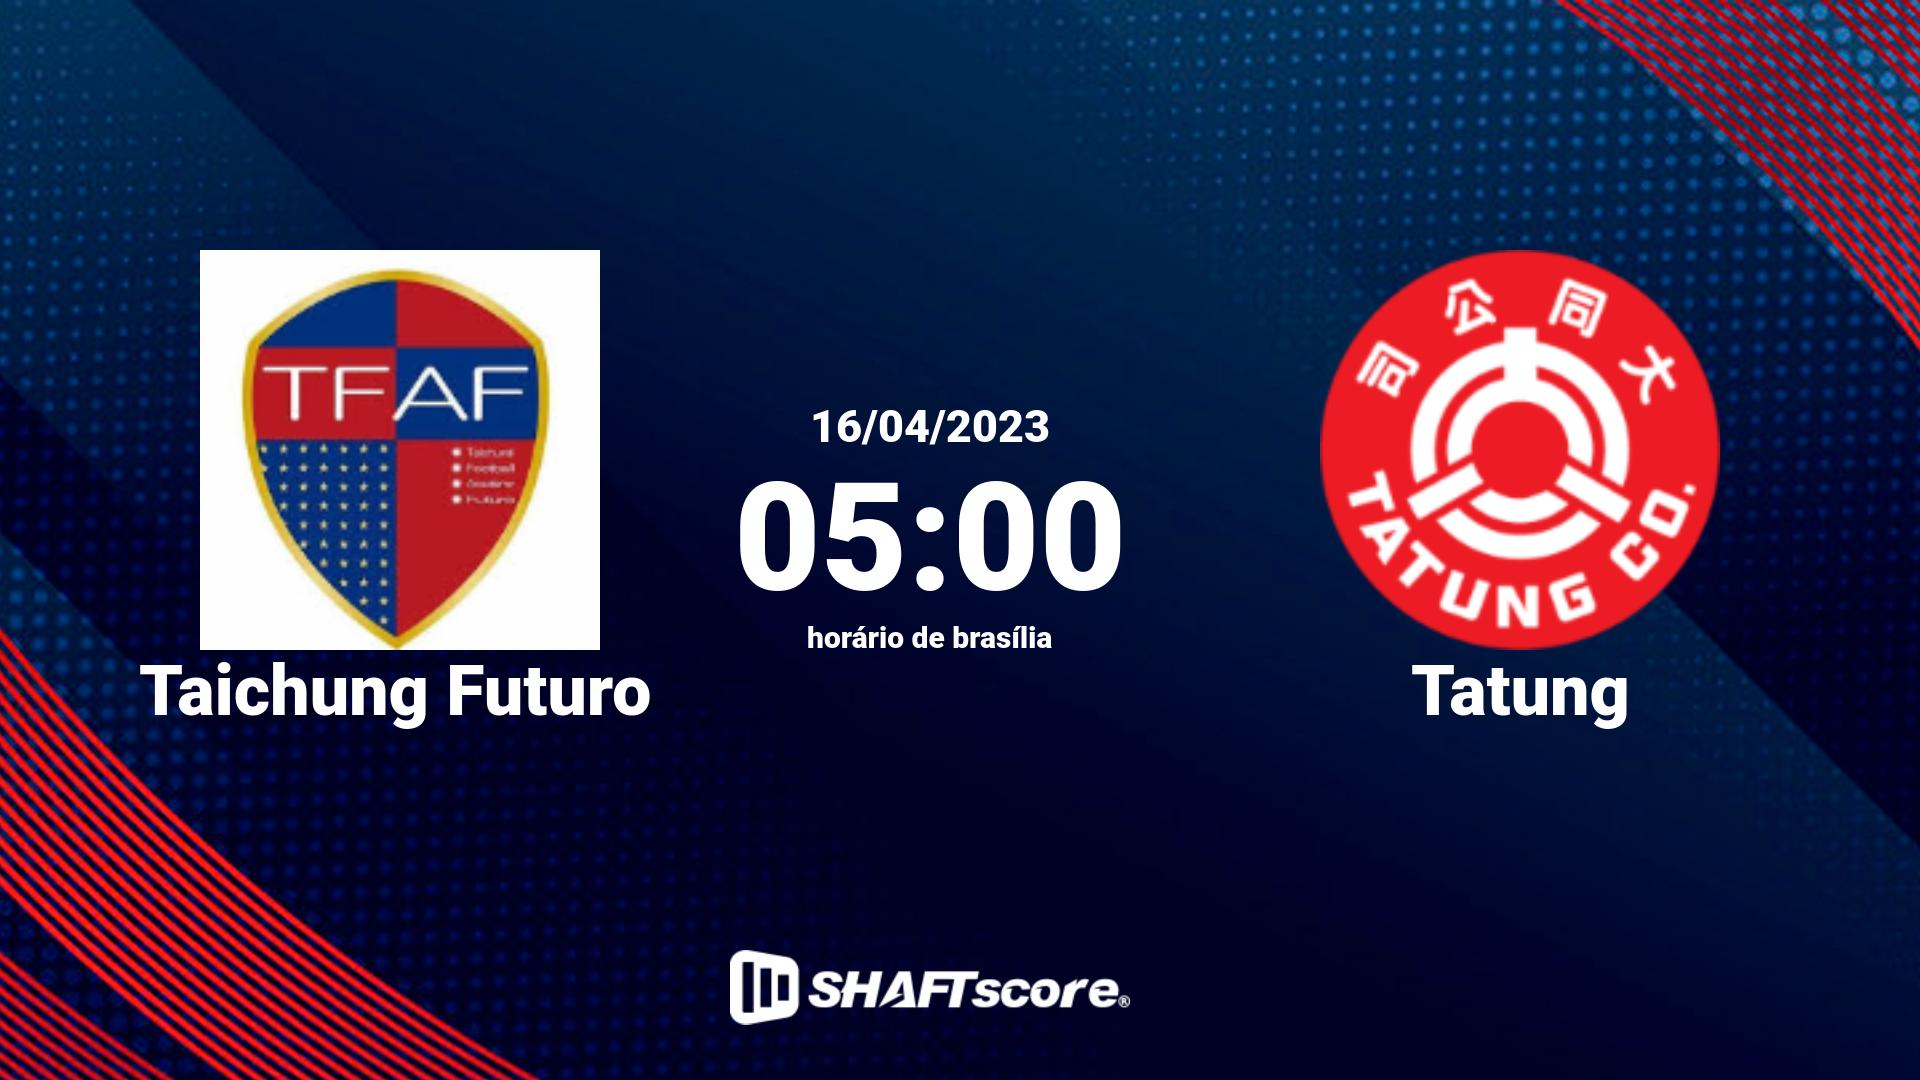 Estatísticas do jogo Taichung Futuro vs Tatung 16.04 05:00